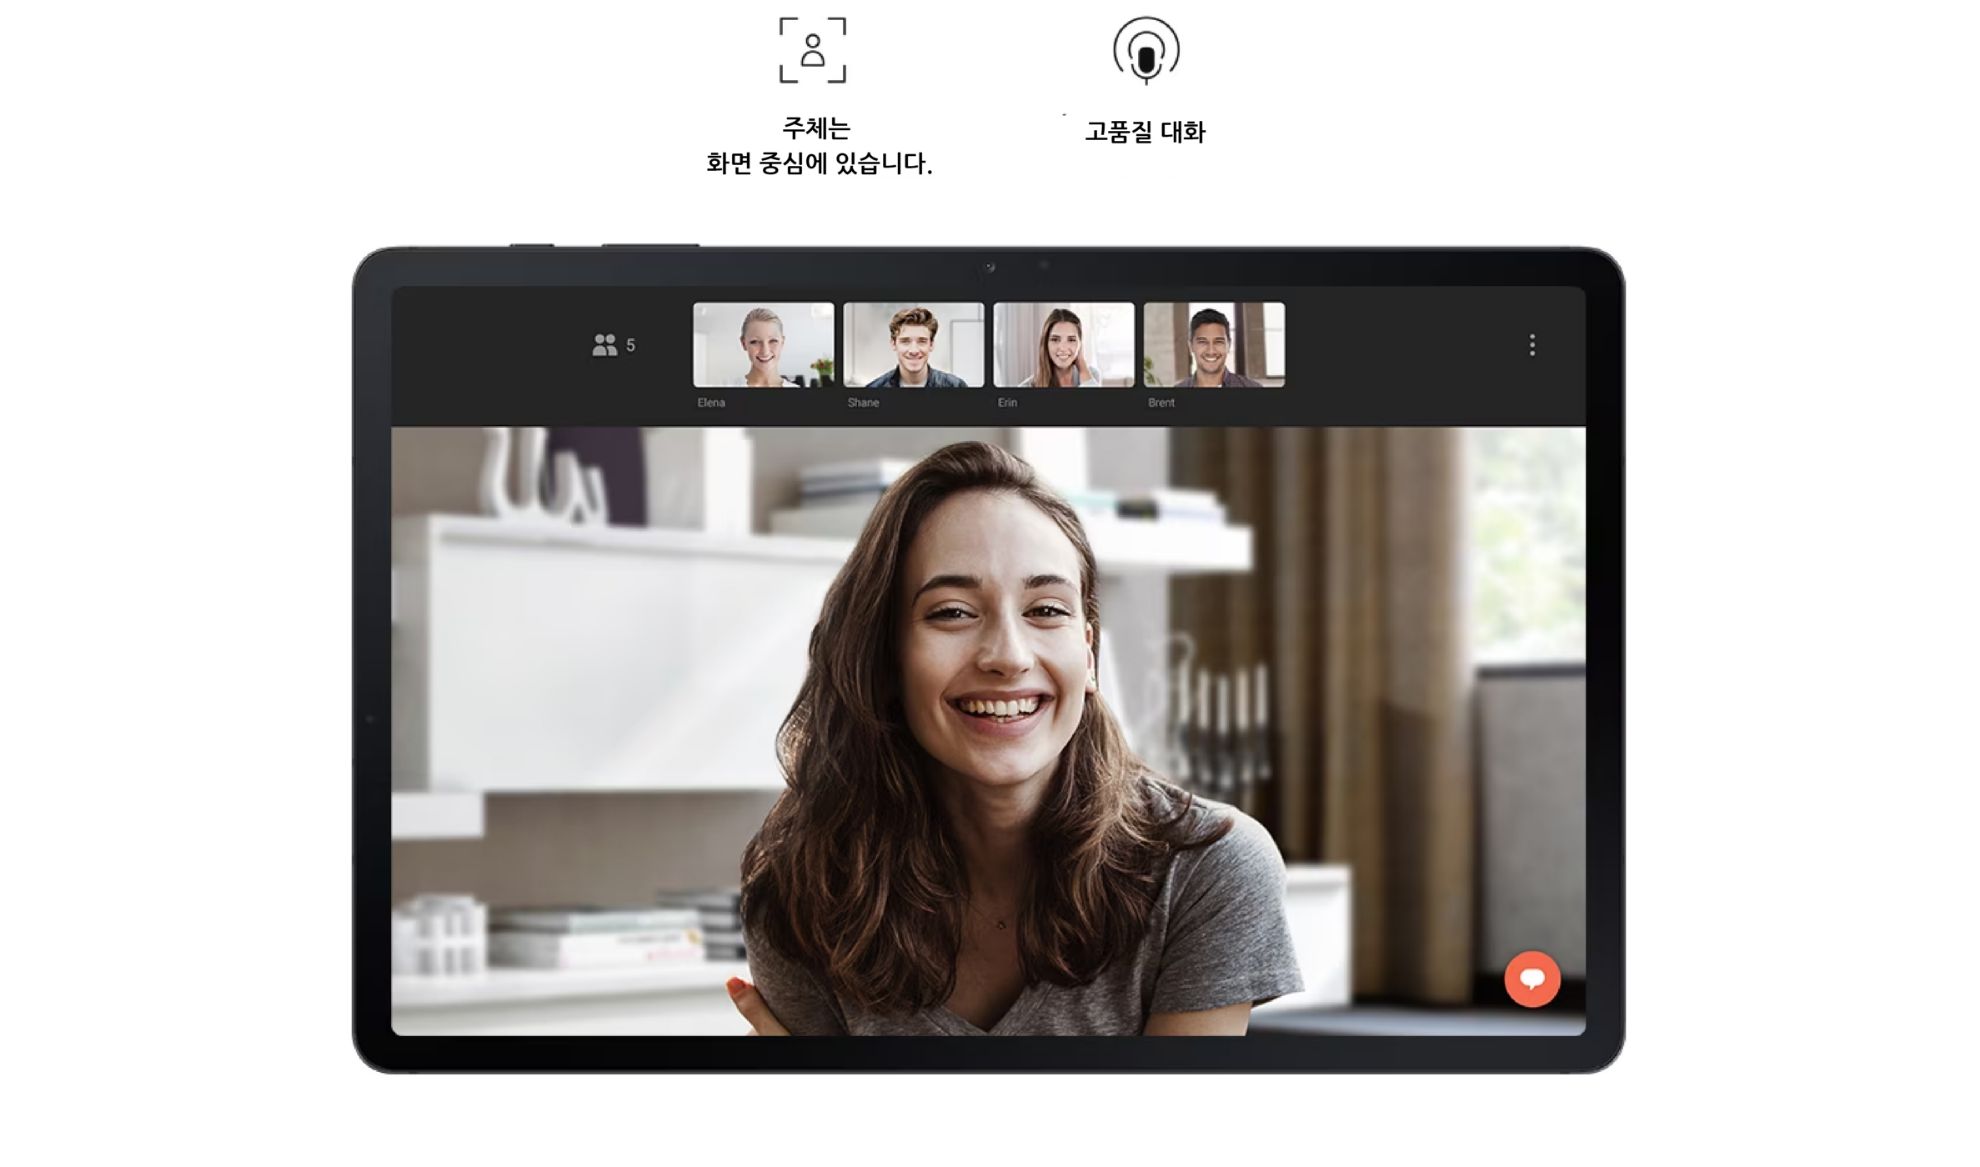 Màn hình của Galaxy Tab S7 FE với cuộc trò chuyện video giữa một phụ nữ và 4 người bạn. Các biểu tượng cho biết Luôn ở trung tâm màn hình và giọng nói rõ ràng.